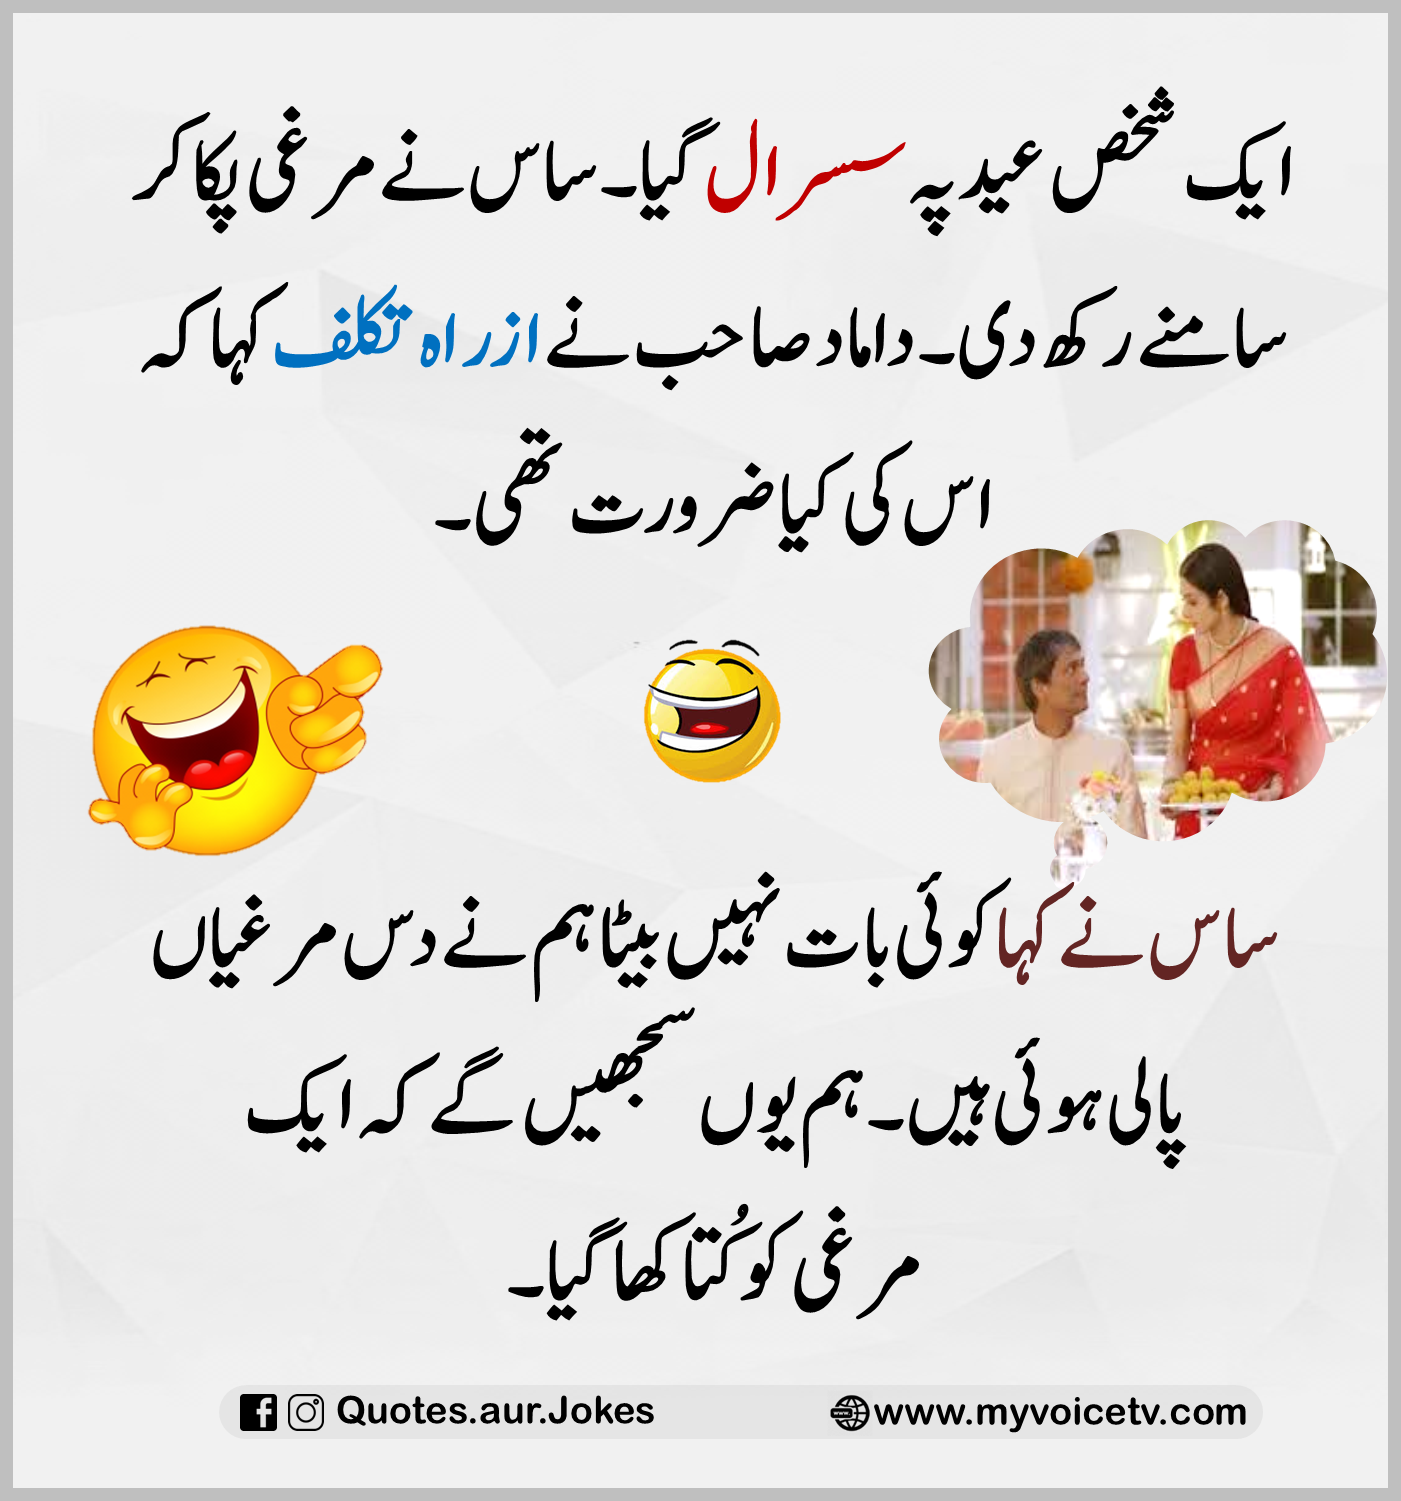 Funny Jokes In Urdu - Image to u